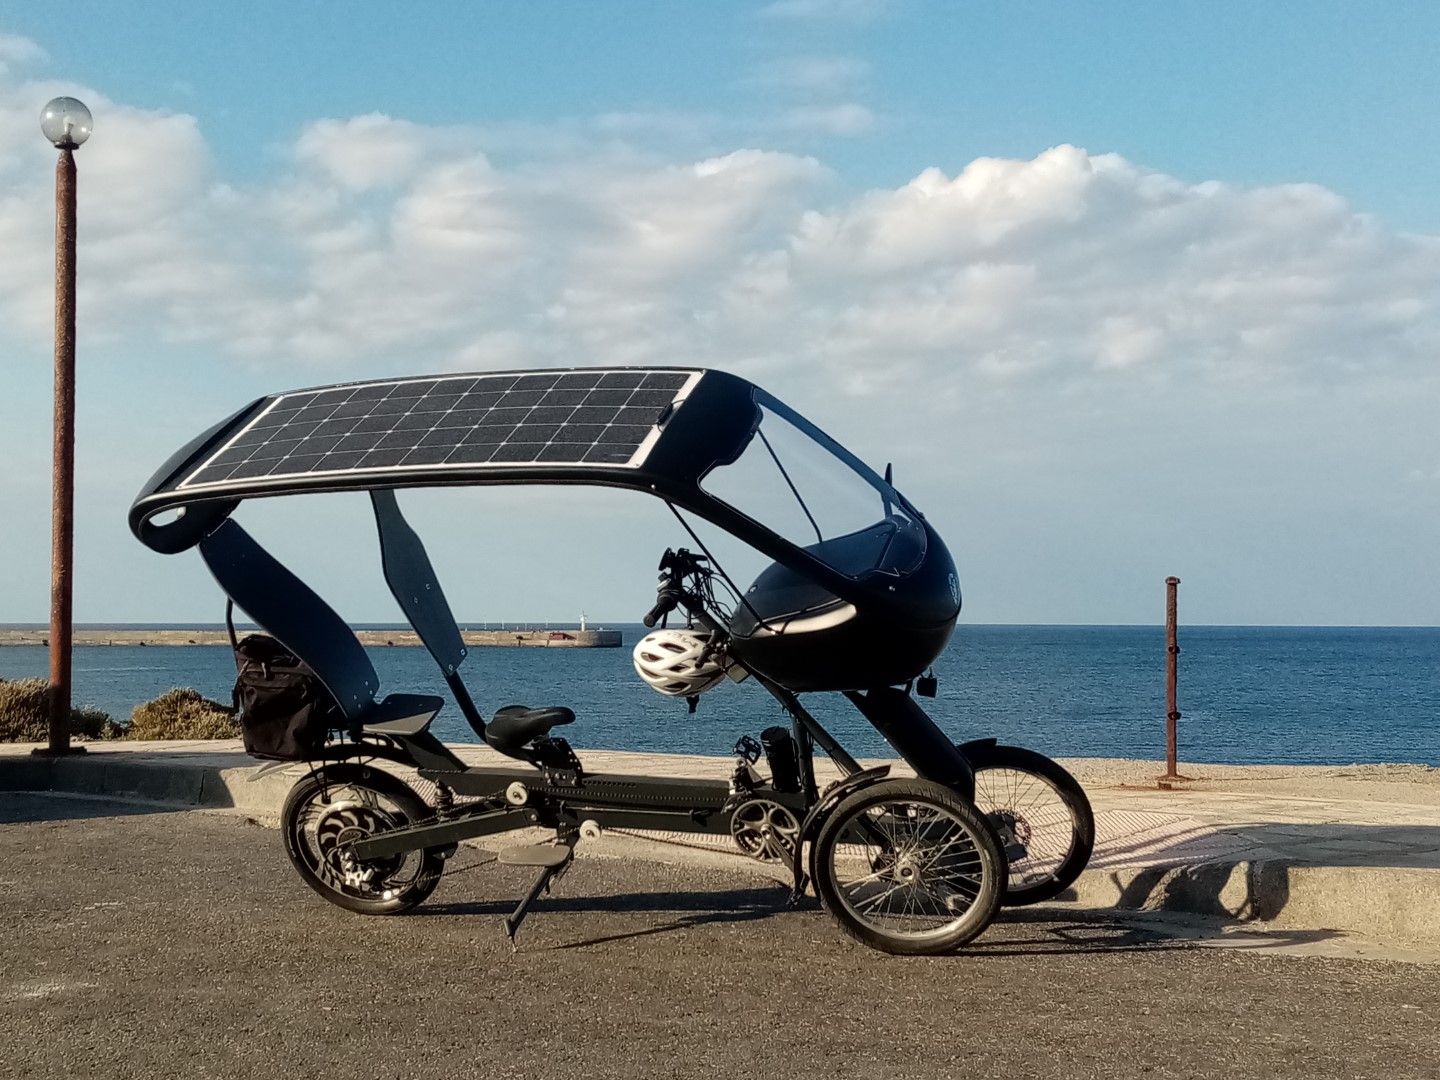 Αποκλειστικό || Sunnyclist: Το ηλεκτρικό-ηλιακό όχημα... από την Κρήτη!